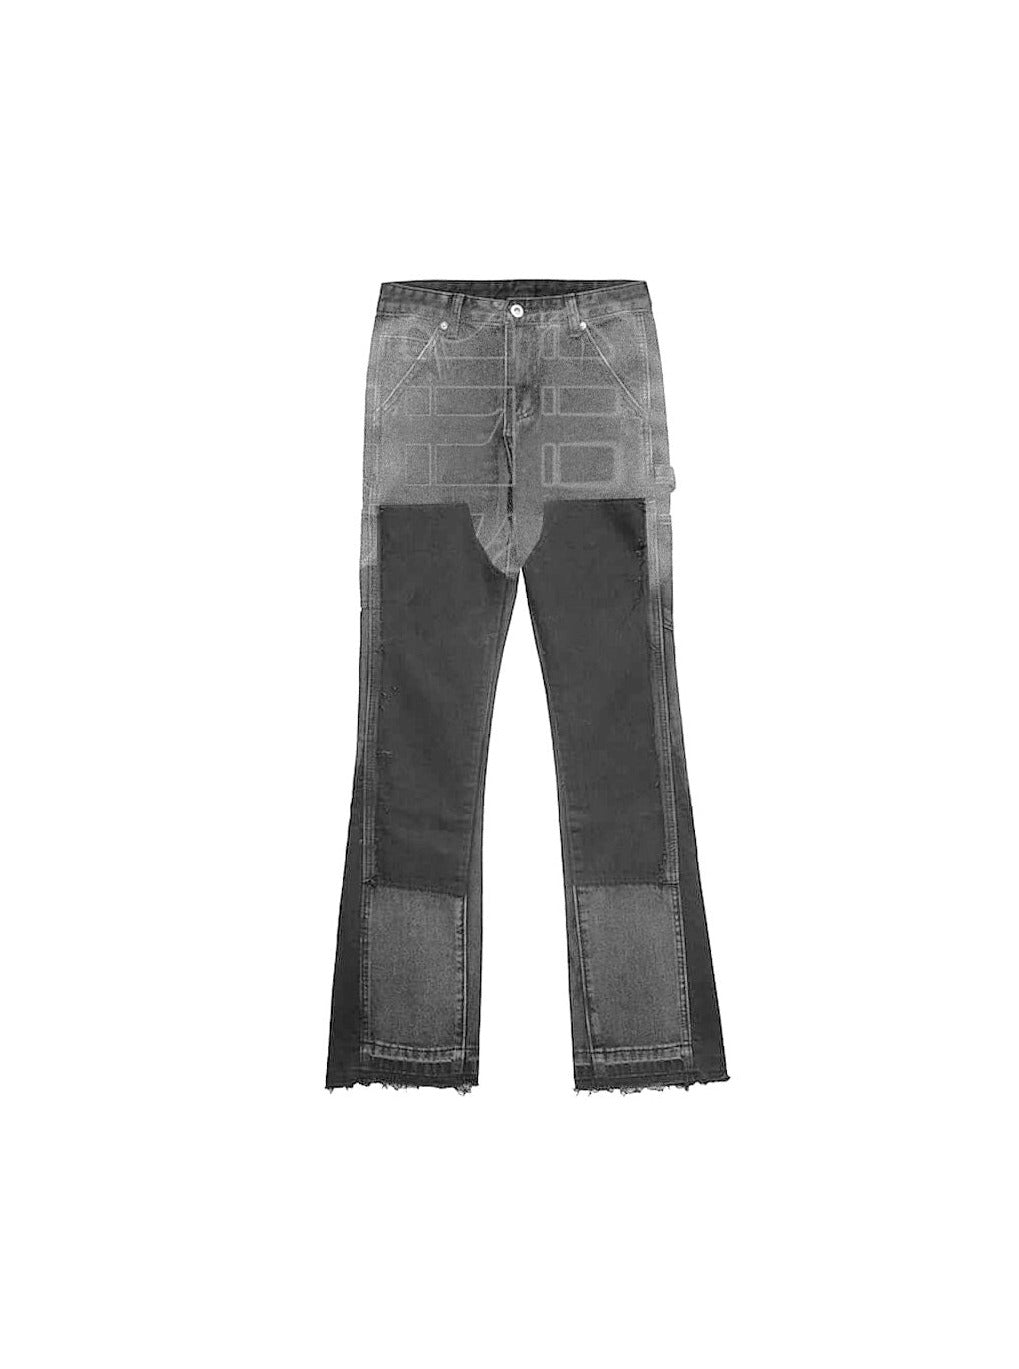 Sole et. Al Metro Flared Carpenter Denim Jeans : Gris